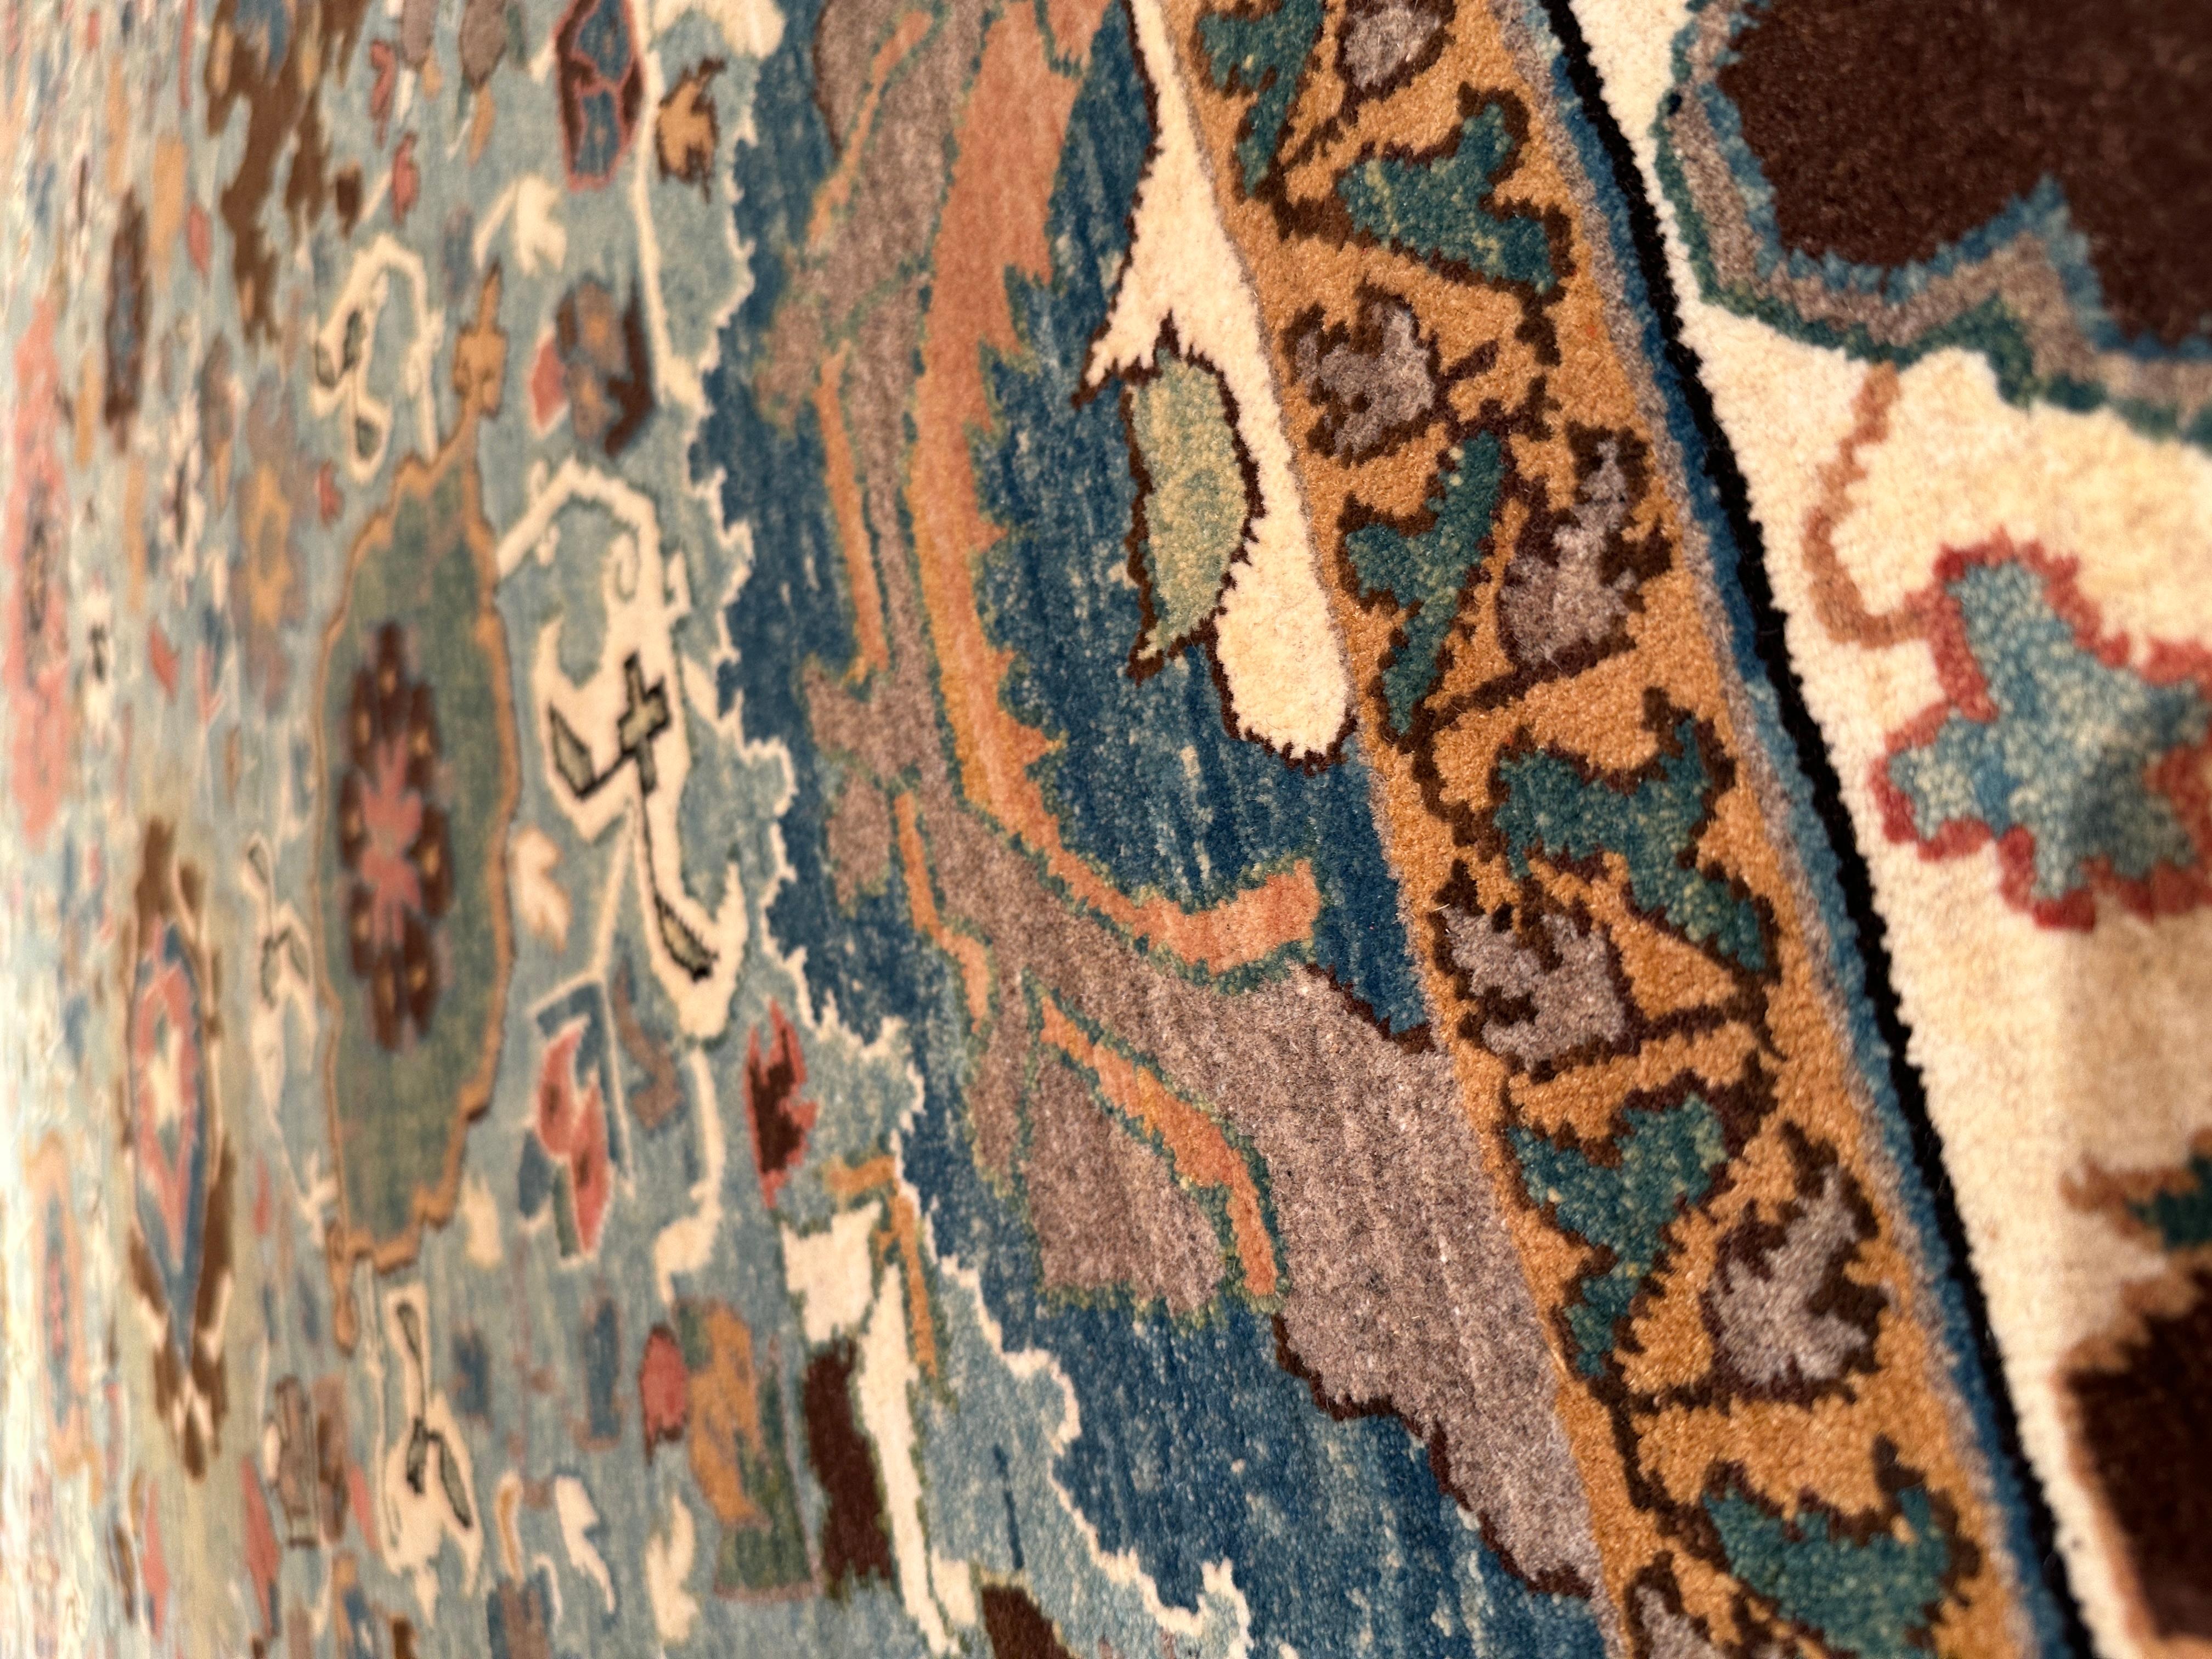 Die Quelle des Teppichs stammt aus dem Buch How to Read - Islamic Carpets, Walter B. Denny, The Metropolitan Museum of Art, New York 2014 Abb.82. Dies war ein exklusives Exemplar eines Teppichs mit Palmetten-Gittermuster aus dem 19. Jahrhundert aus